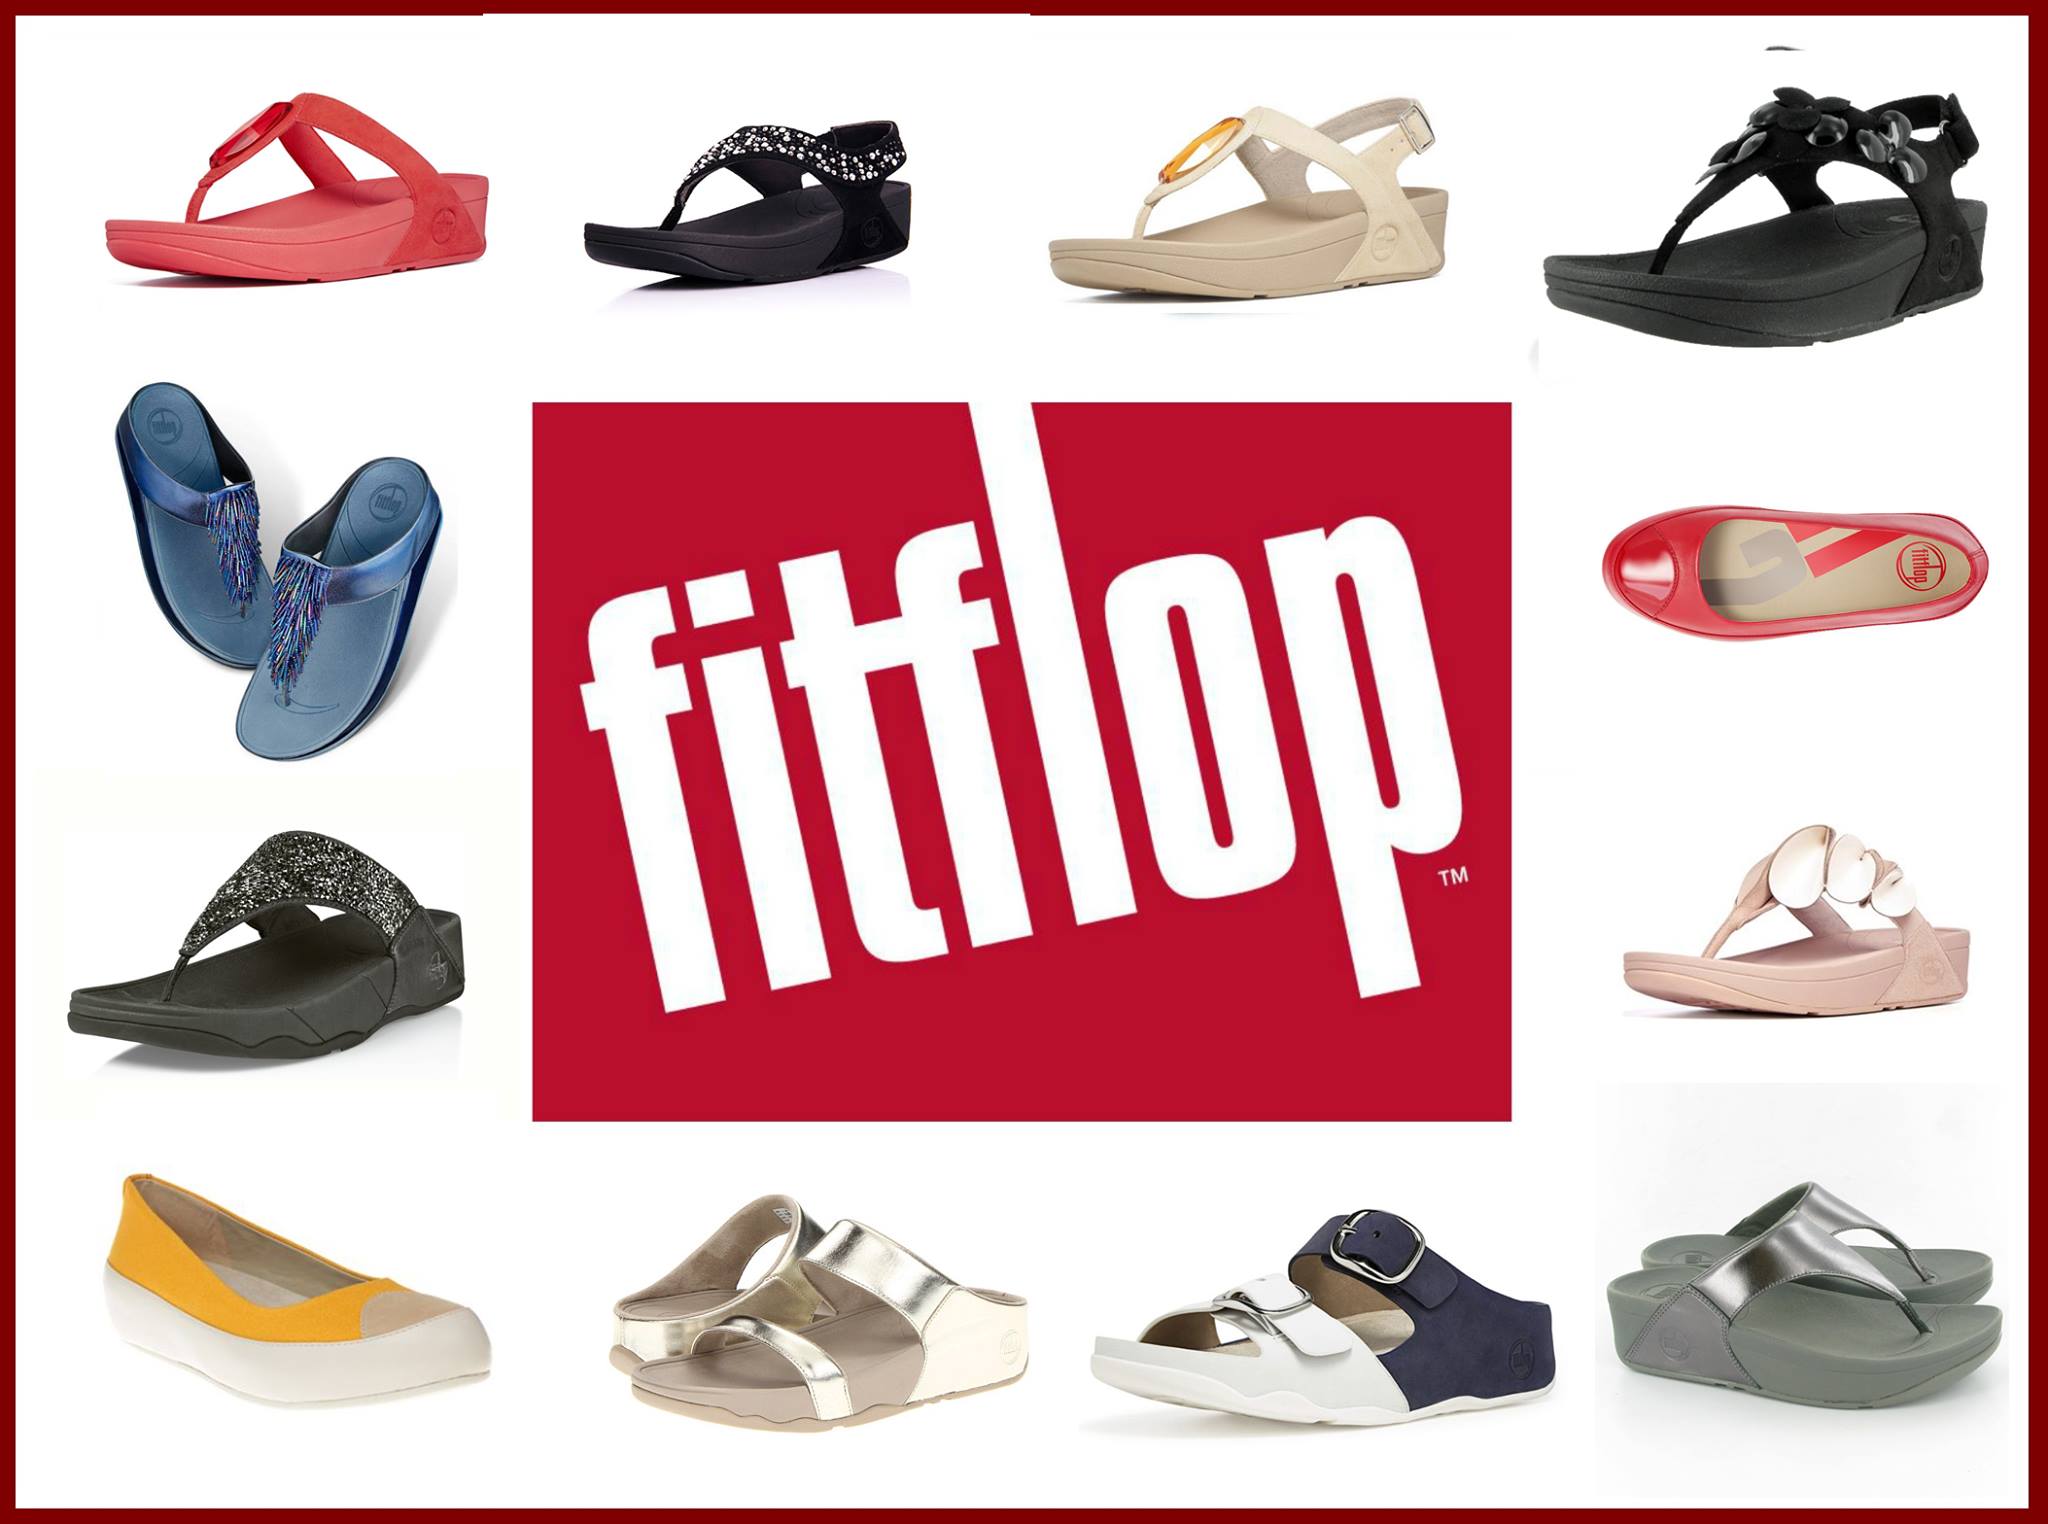 O-Diva แบบใหม่จ้าขายปลีก-ส่งFitflop เริ่มต้น 500 บาทจ้านะจ๊ะมีสินค้าพร้อมส่งครับ รองเท้า Fitflop รองเท้าเพื่อสุขภาพ สีสวยๆ หลายแบบ มาให้เลือกใช้ รูปที่ 1